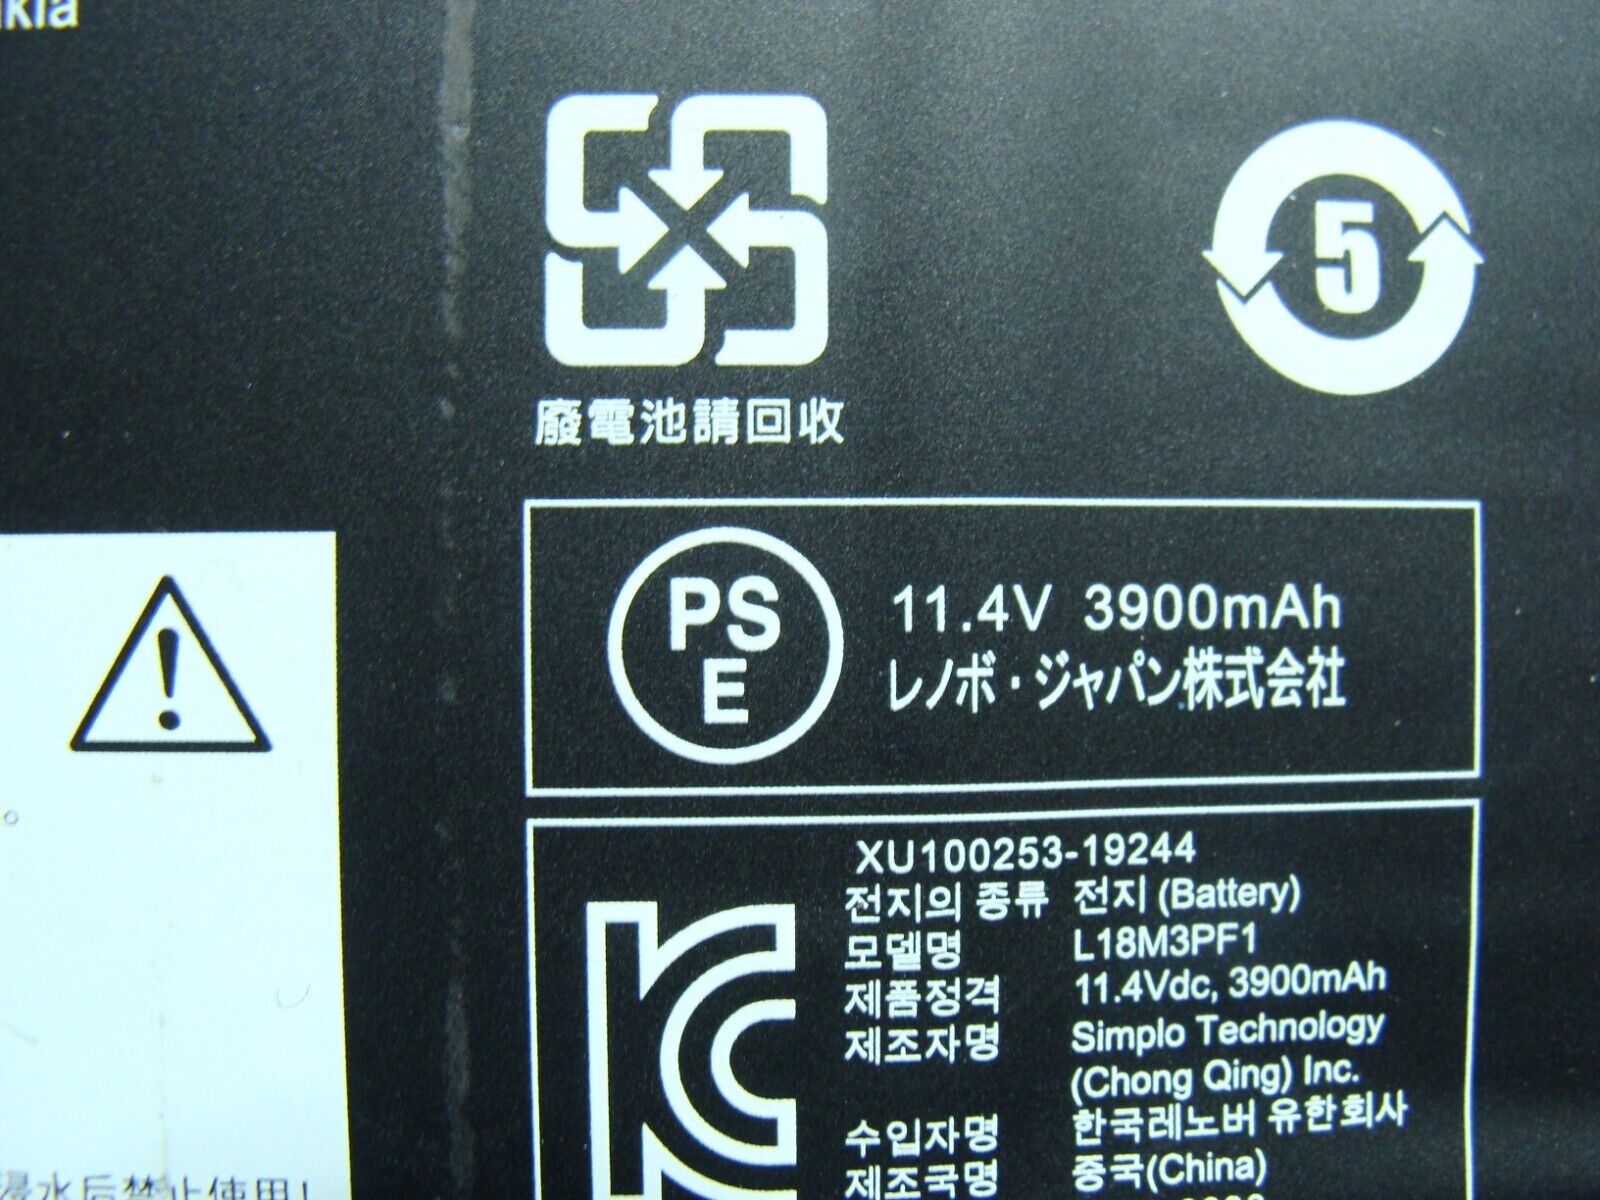 Lenovo IdeaPad 17.3